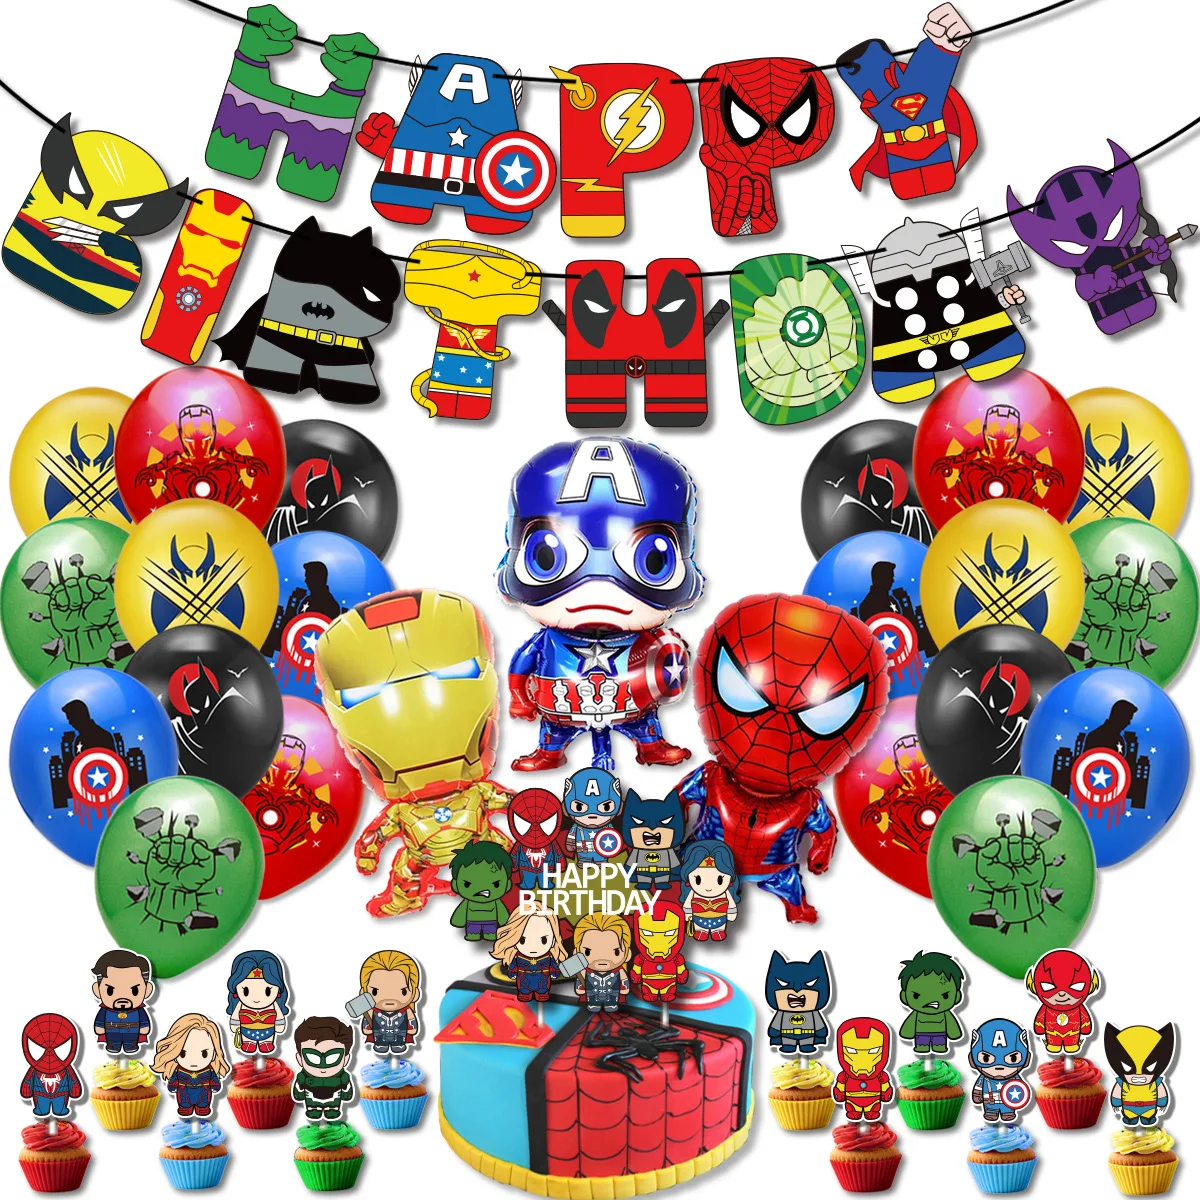 Décoration de fête d'anniversaire Super héros  ballon les Avengers  Spiderman  Iron Man  Hulk